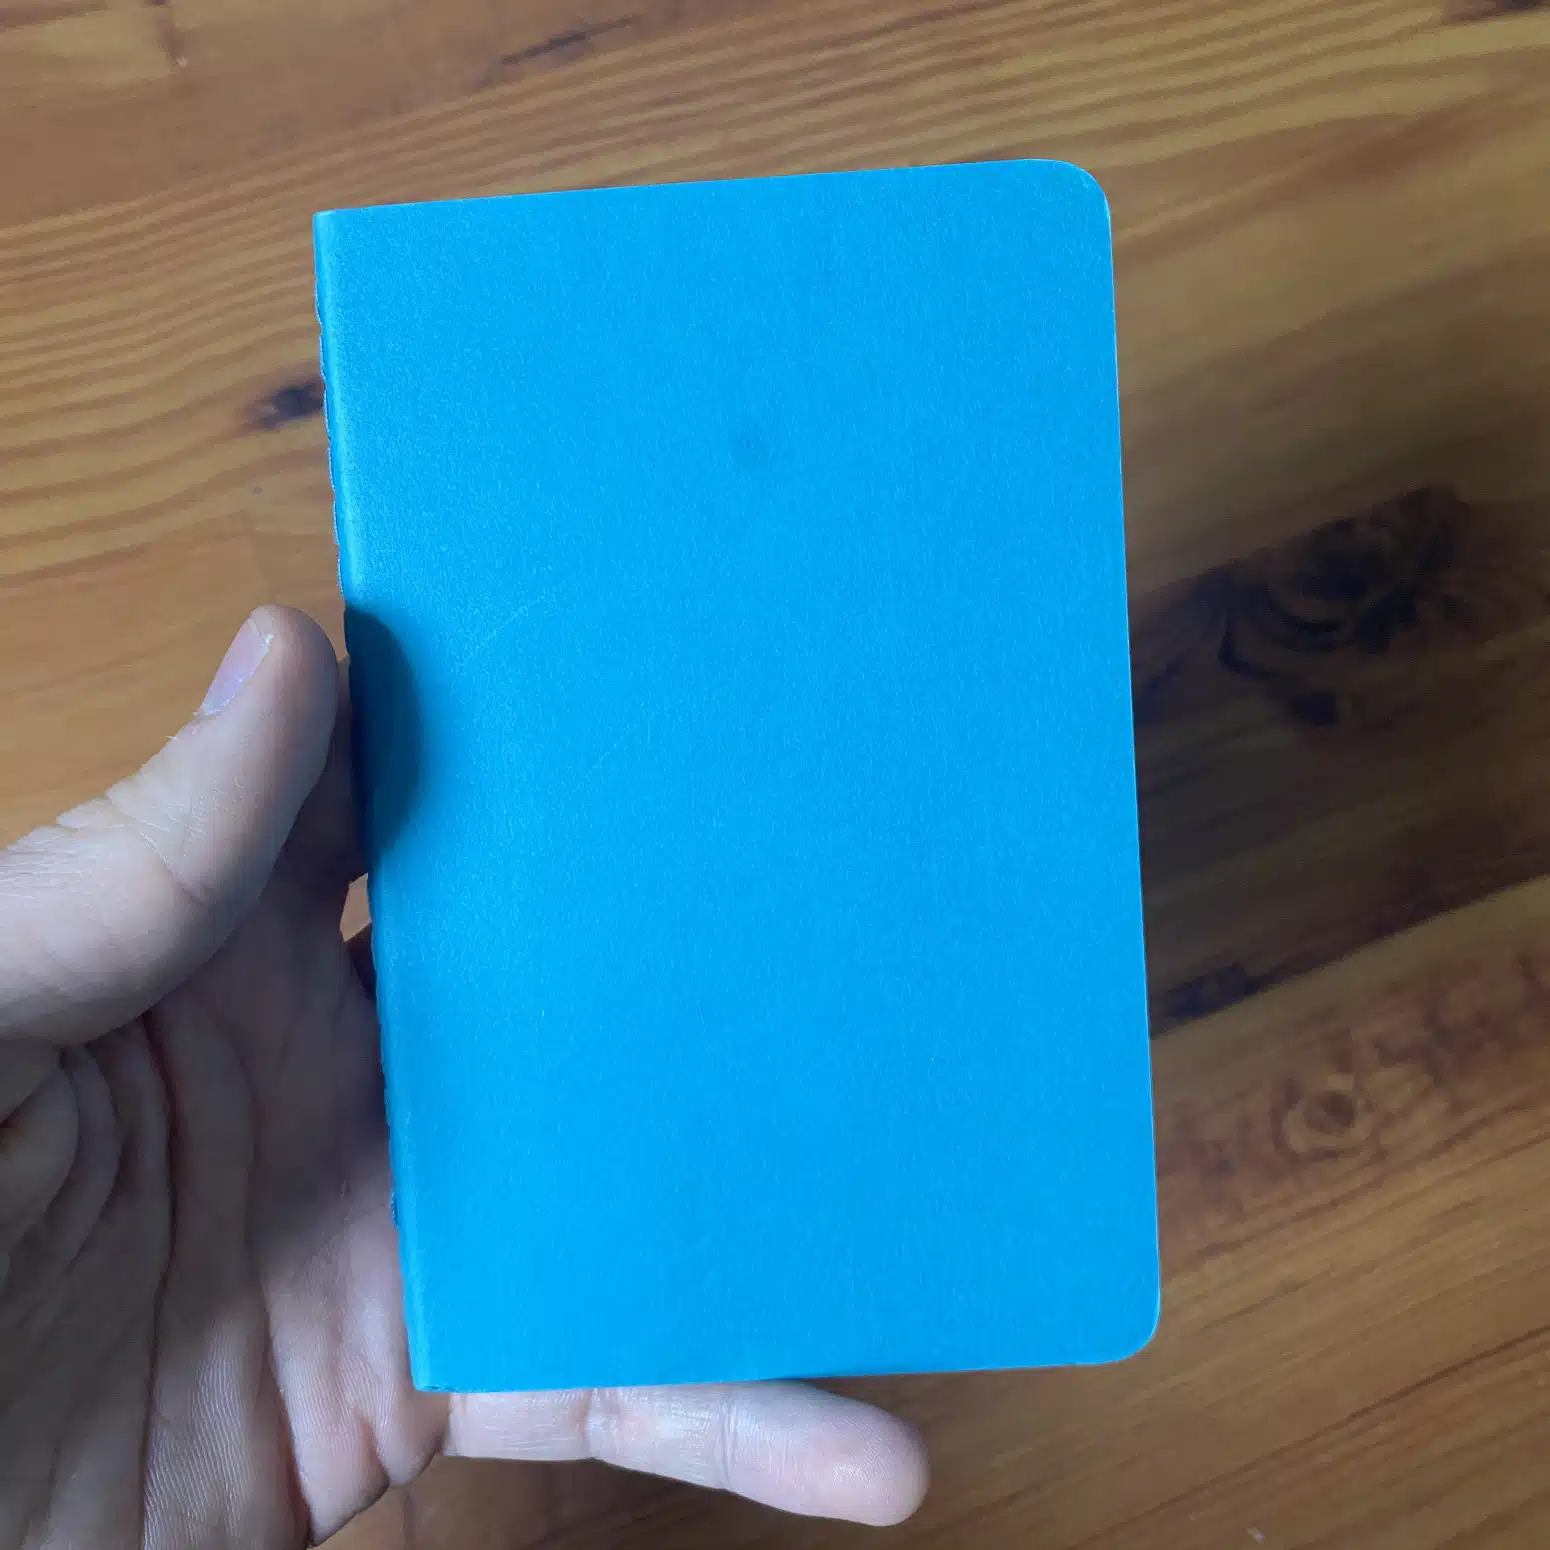 Journal Pocket for Your Secret Notes